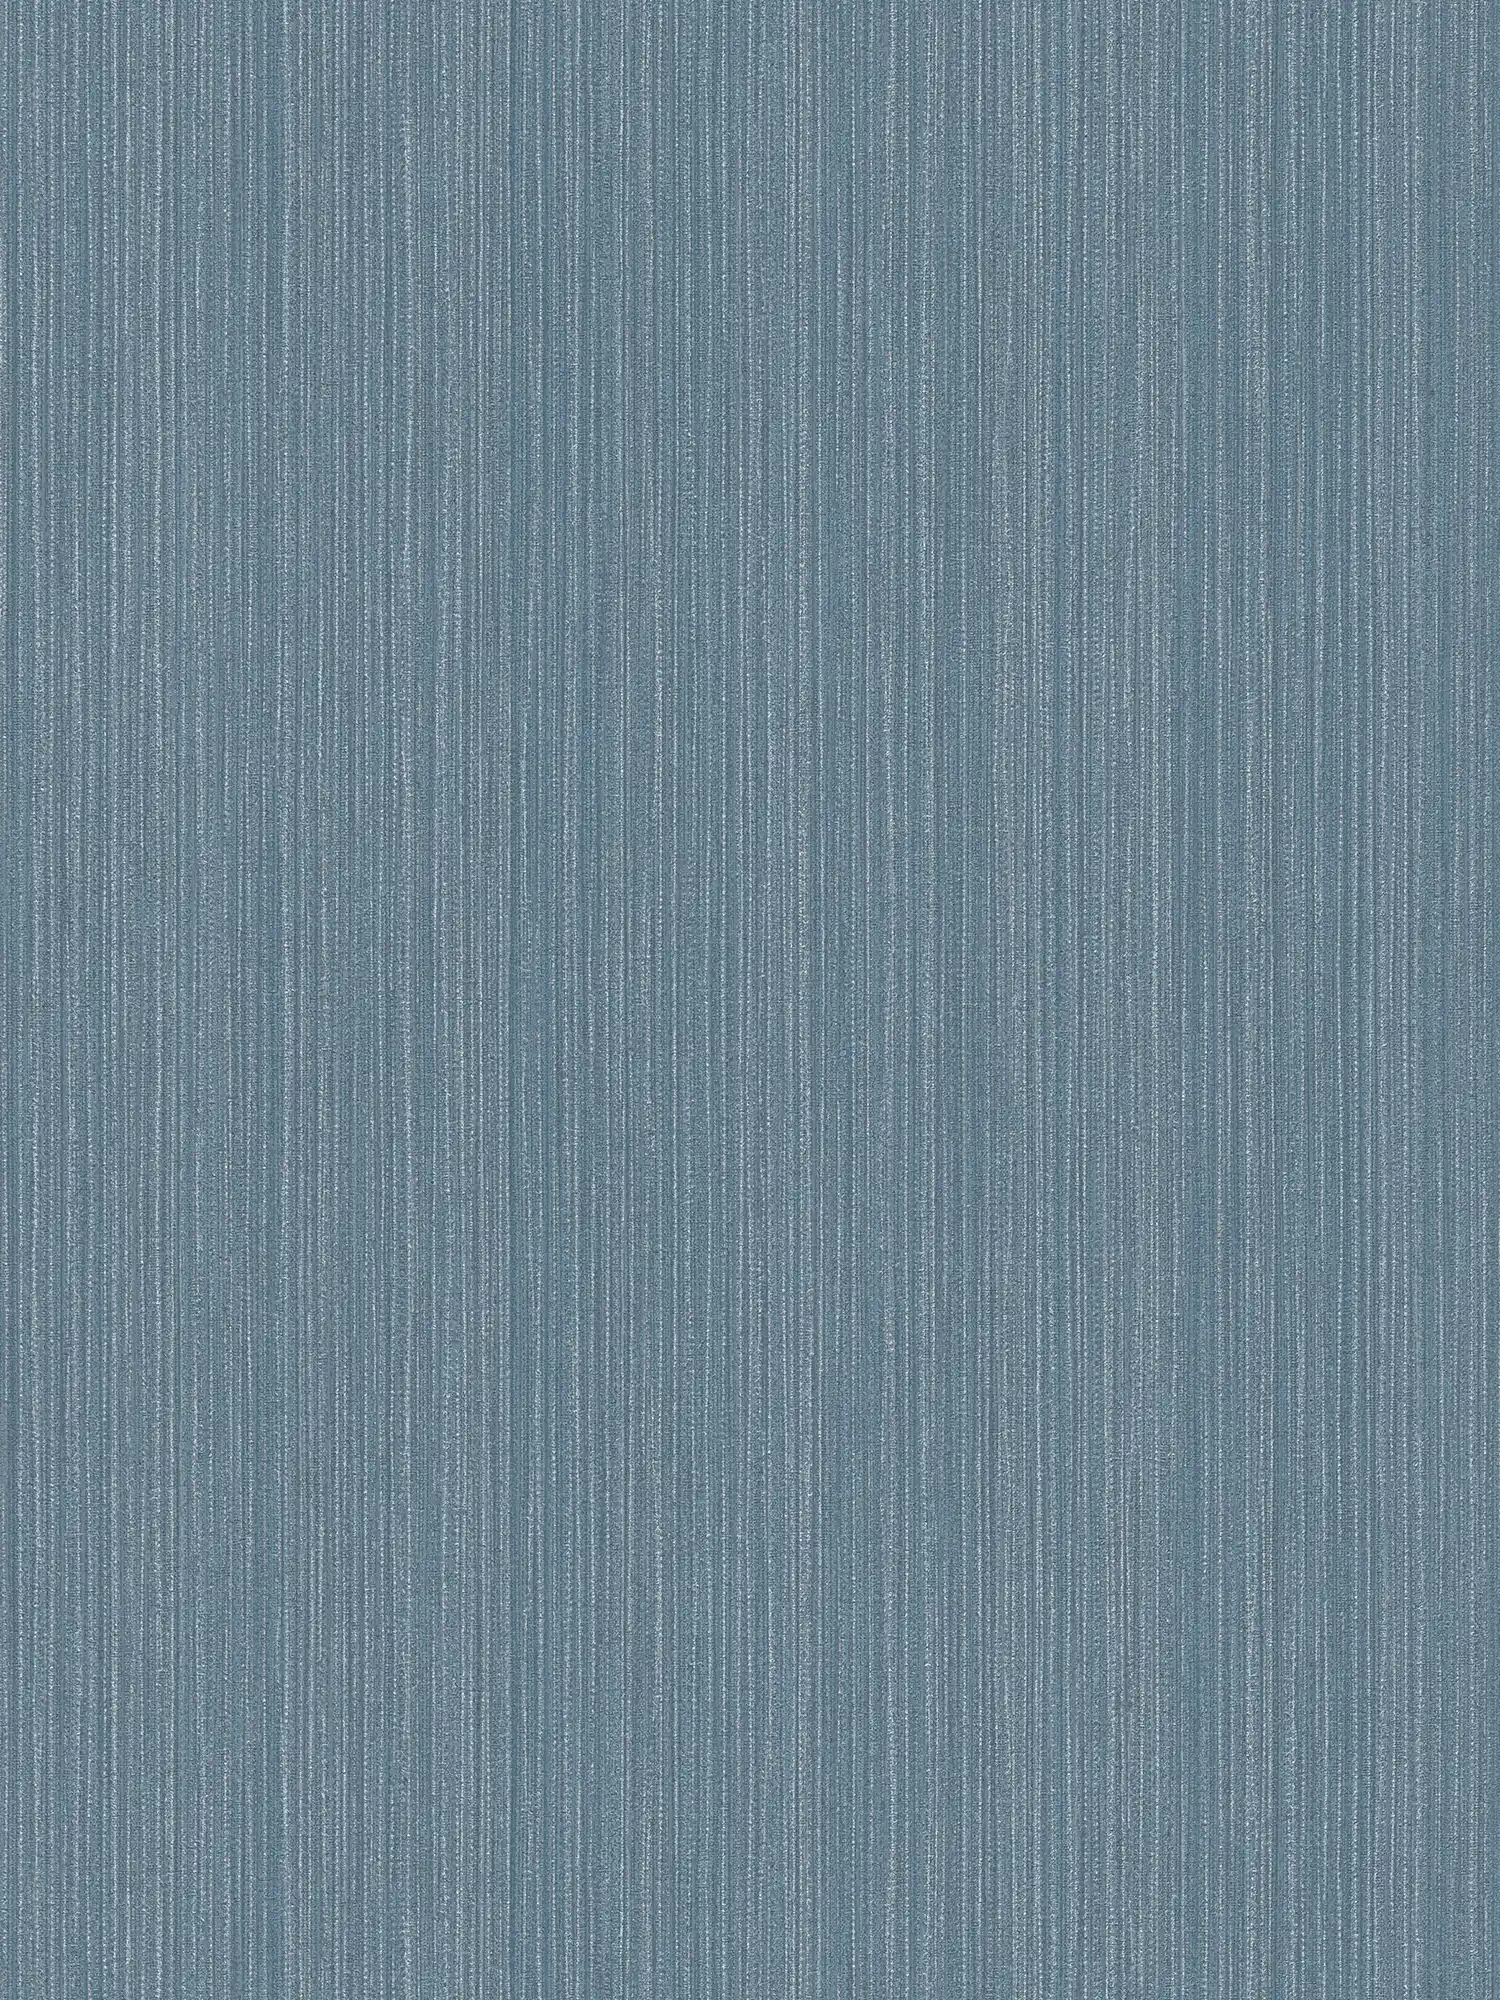 Eenheidsbehang met grijsblauwe textiellook - blauw, metallic
